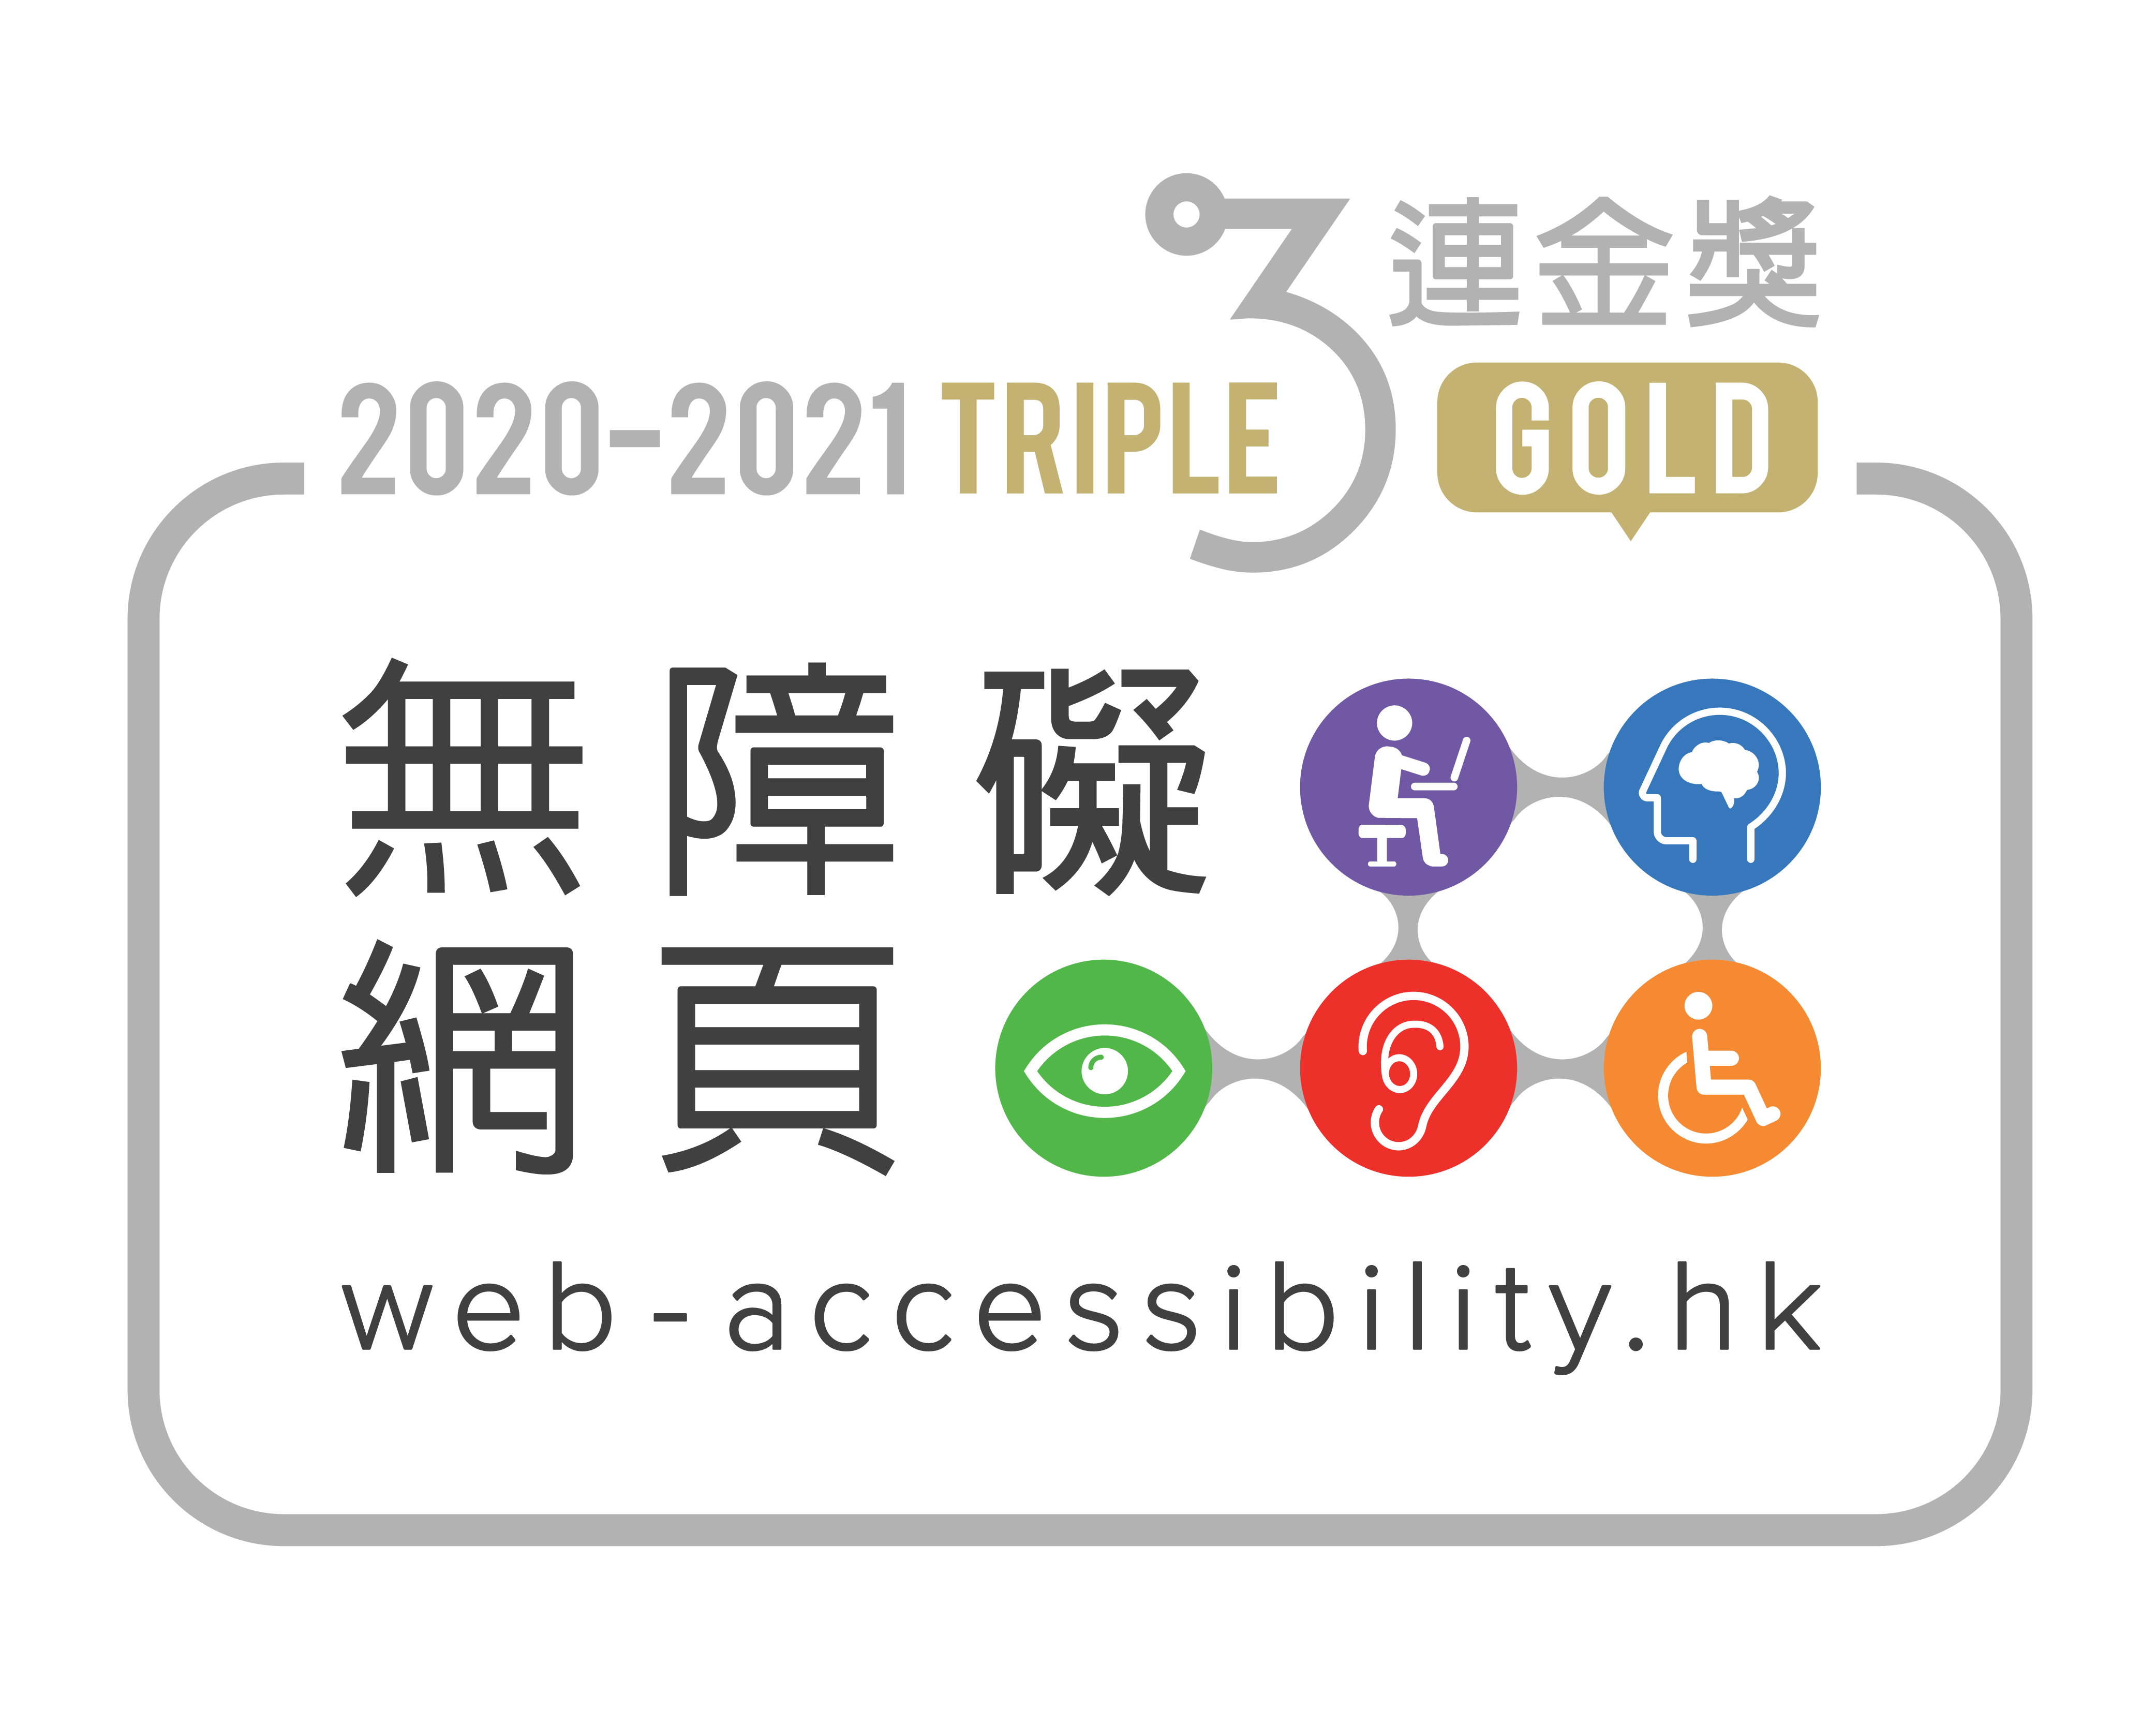 会展中心网页在香港互联网注册管理有限公司（HKIRC）主办的“无障碍网页嘉许计划”2020-2021中，获颁发“网站组别”三连金奖